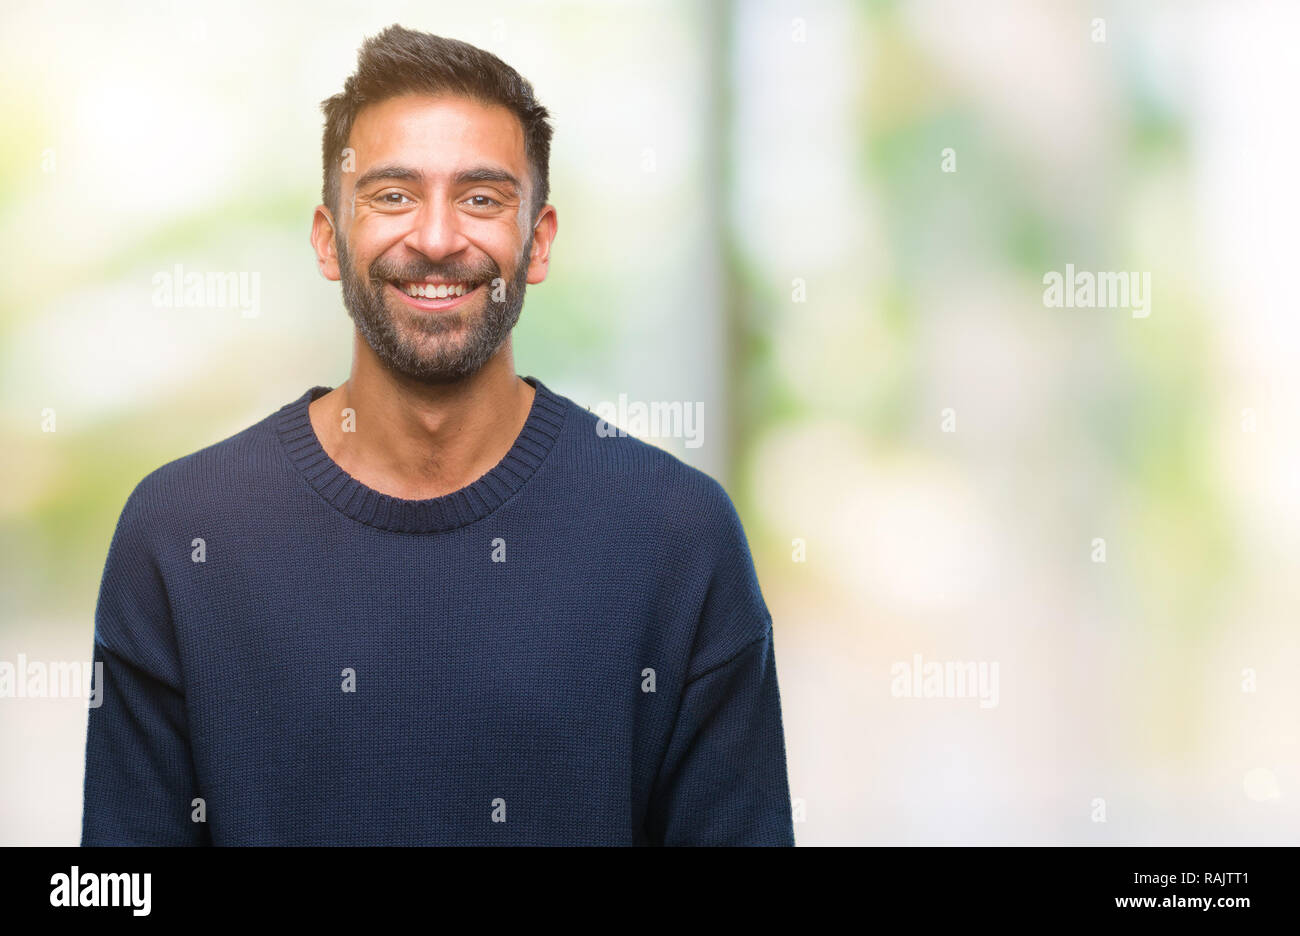 El hombre a lo largo de hispanos adultos aislados con un fondo fresco y alegre sonrisa en la cara. Persona afortunada. Foto de stock